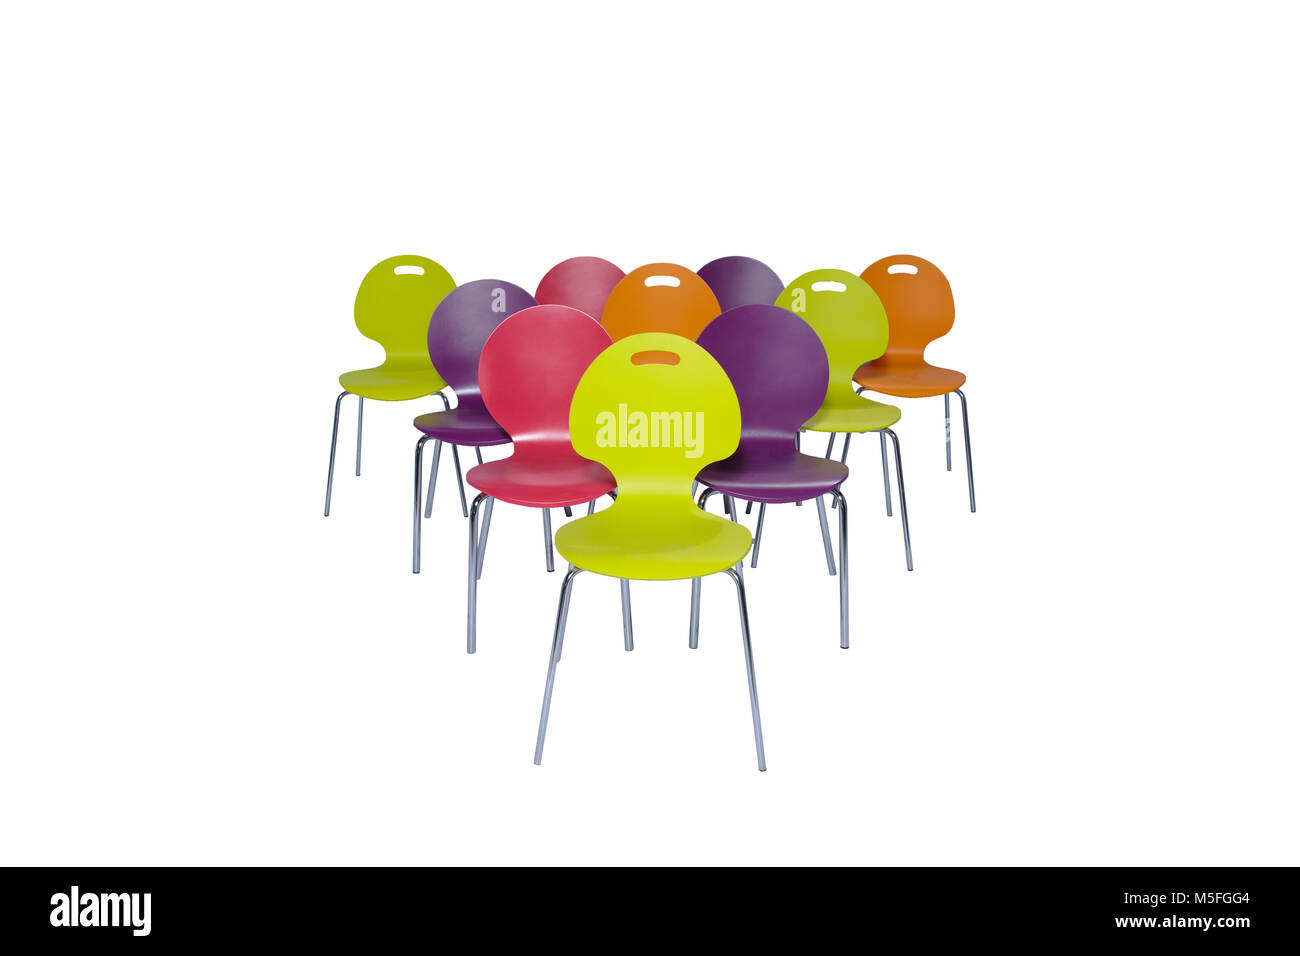 composition de chaises en plastique coloré isolées sur fond blanc Banque D'Images